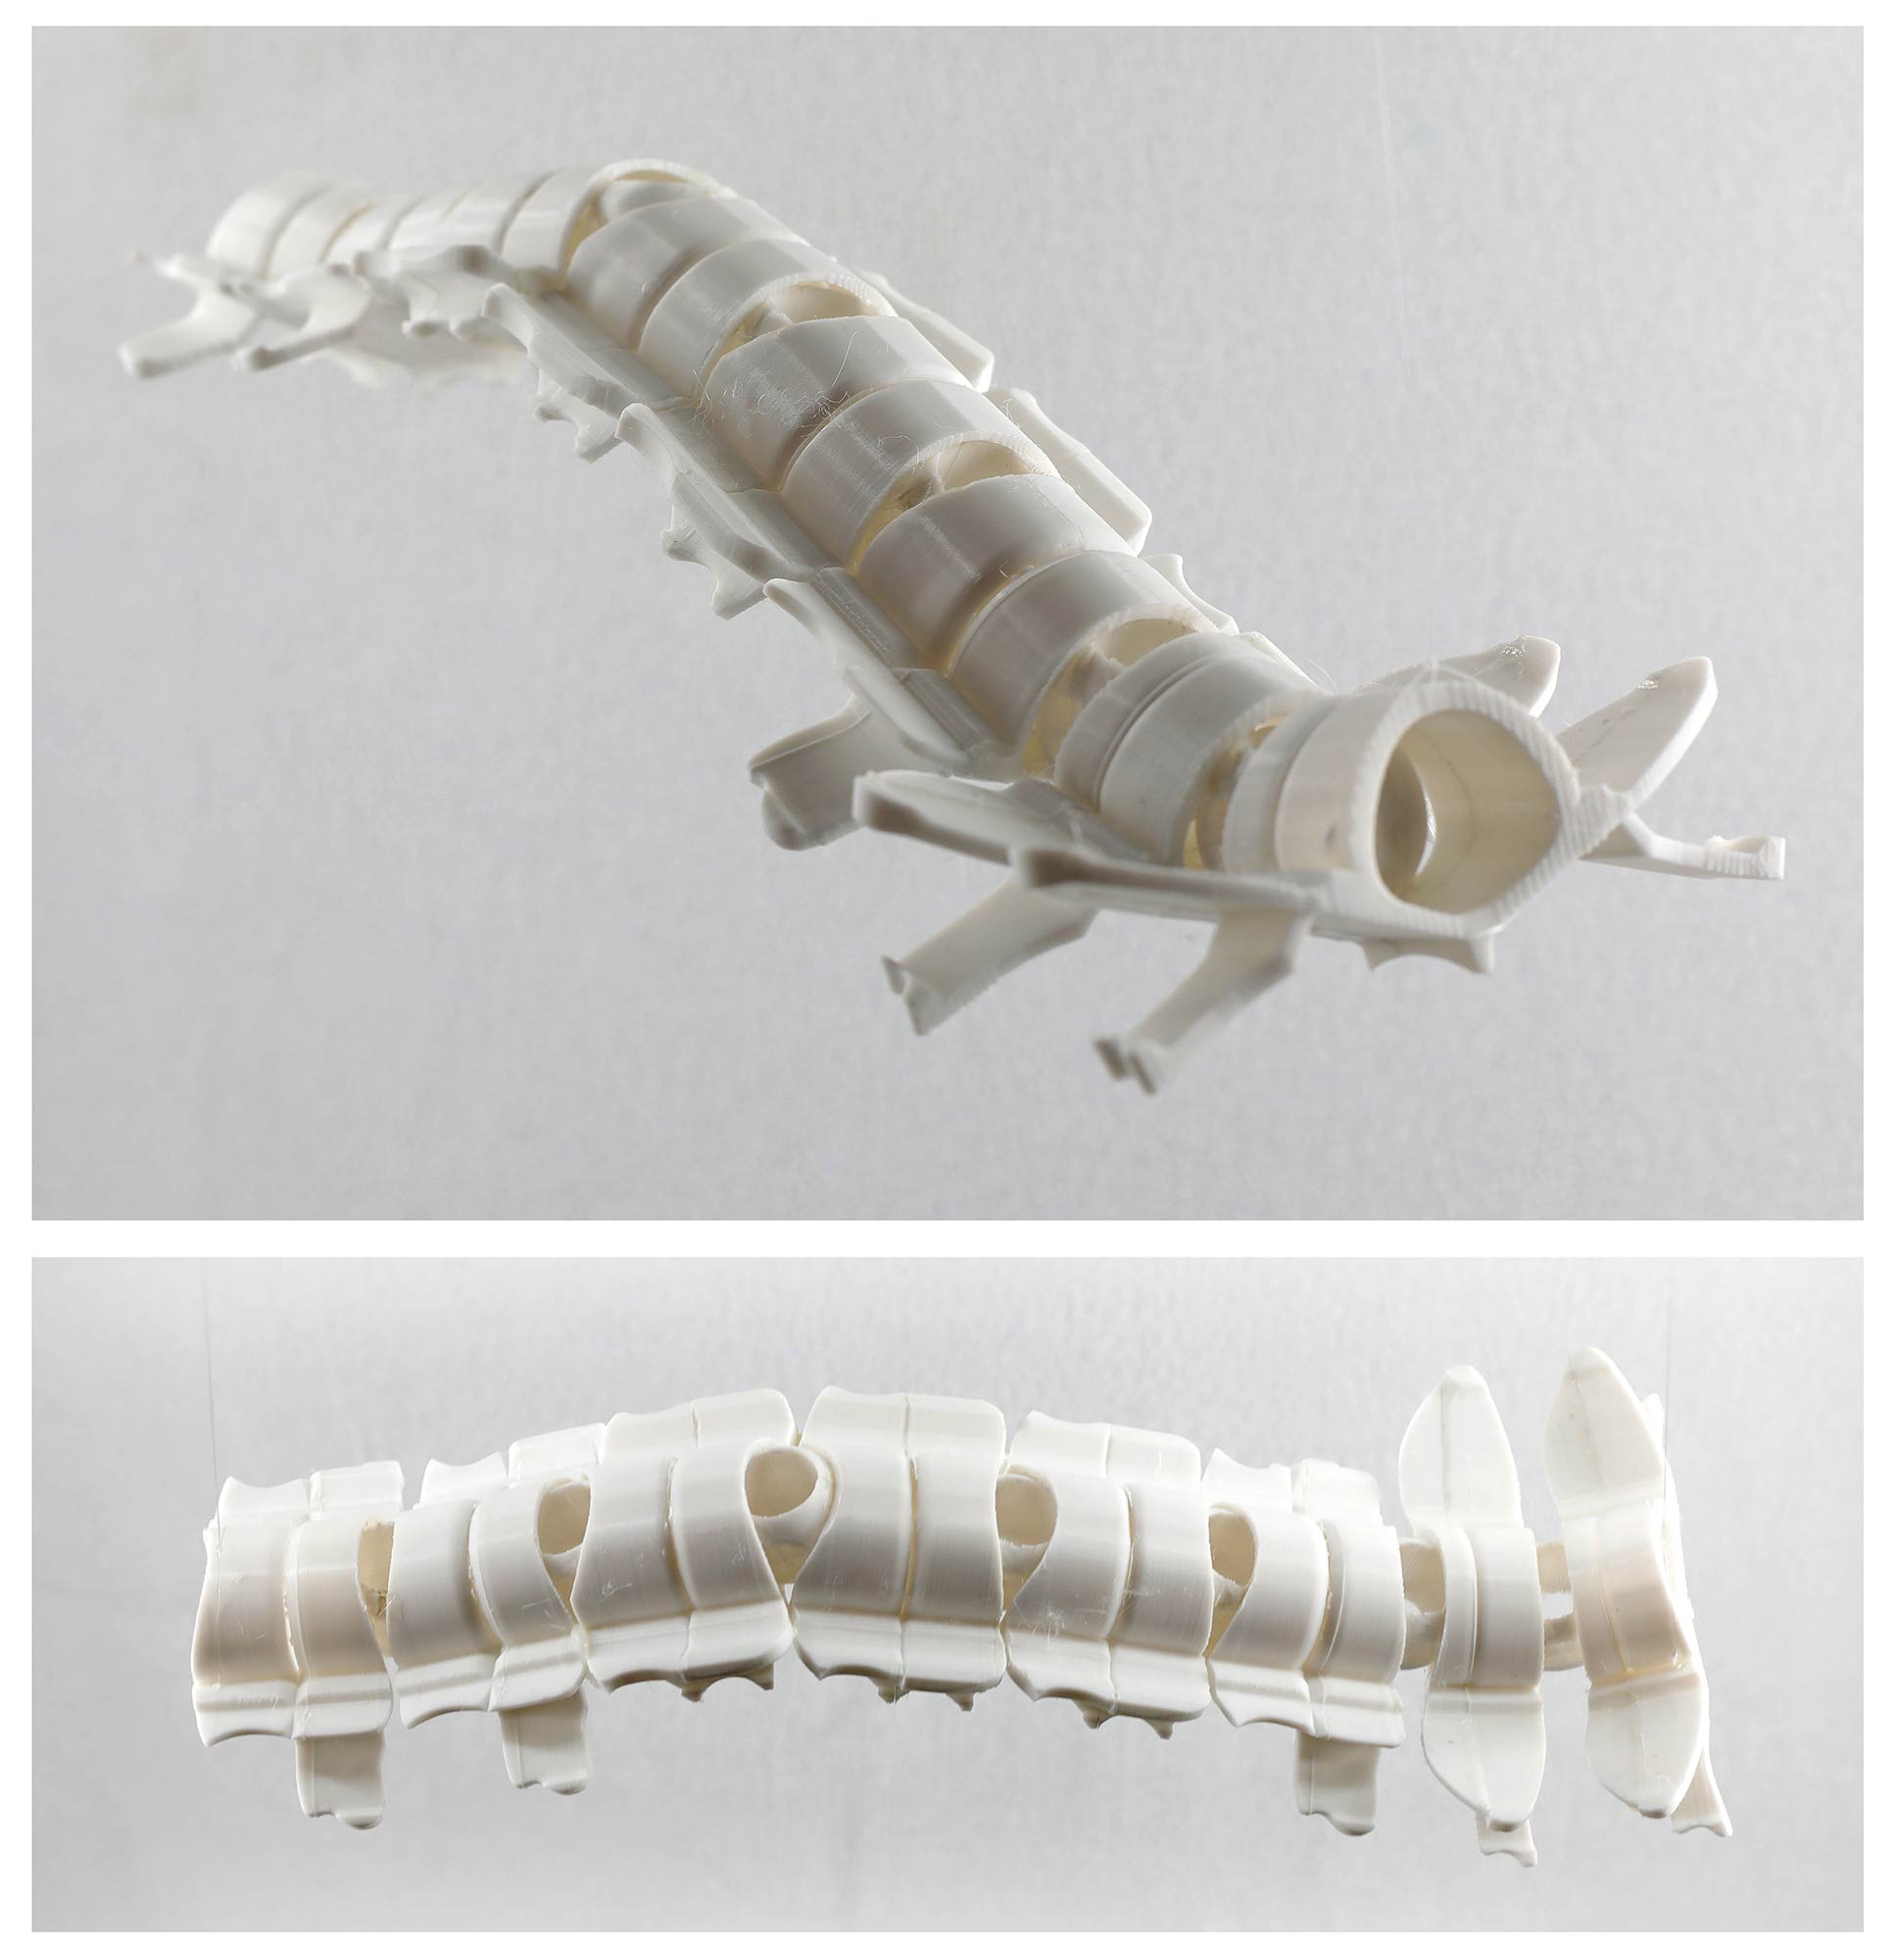 A sculpture resembling a spine